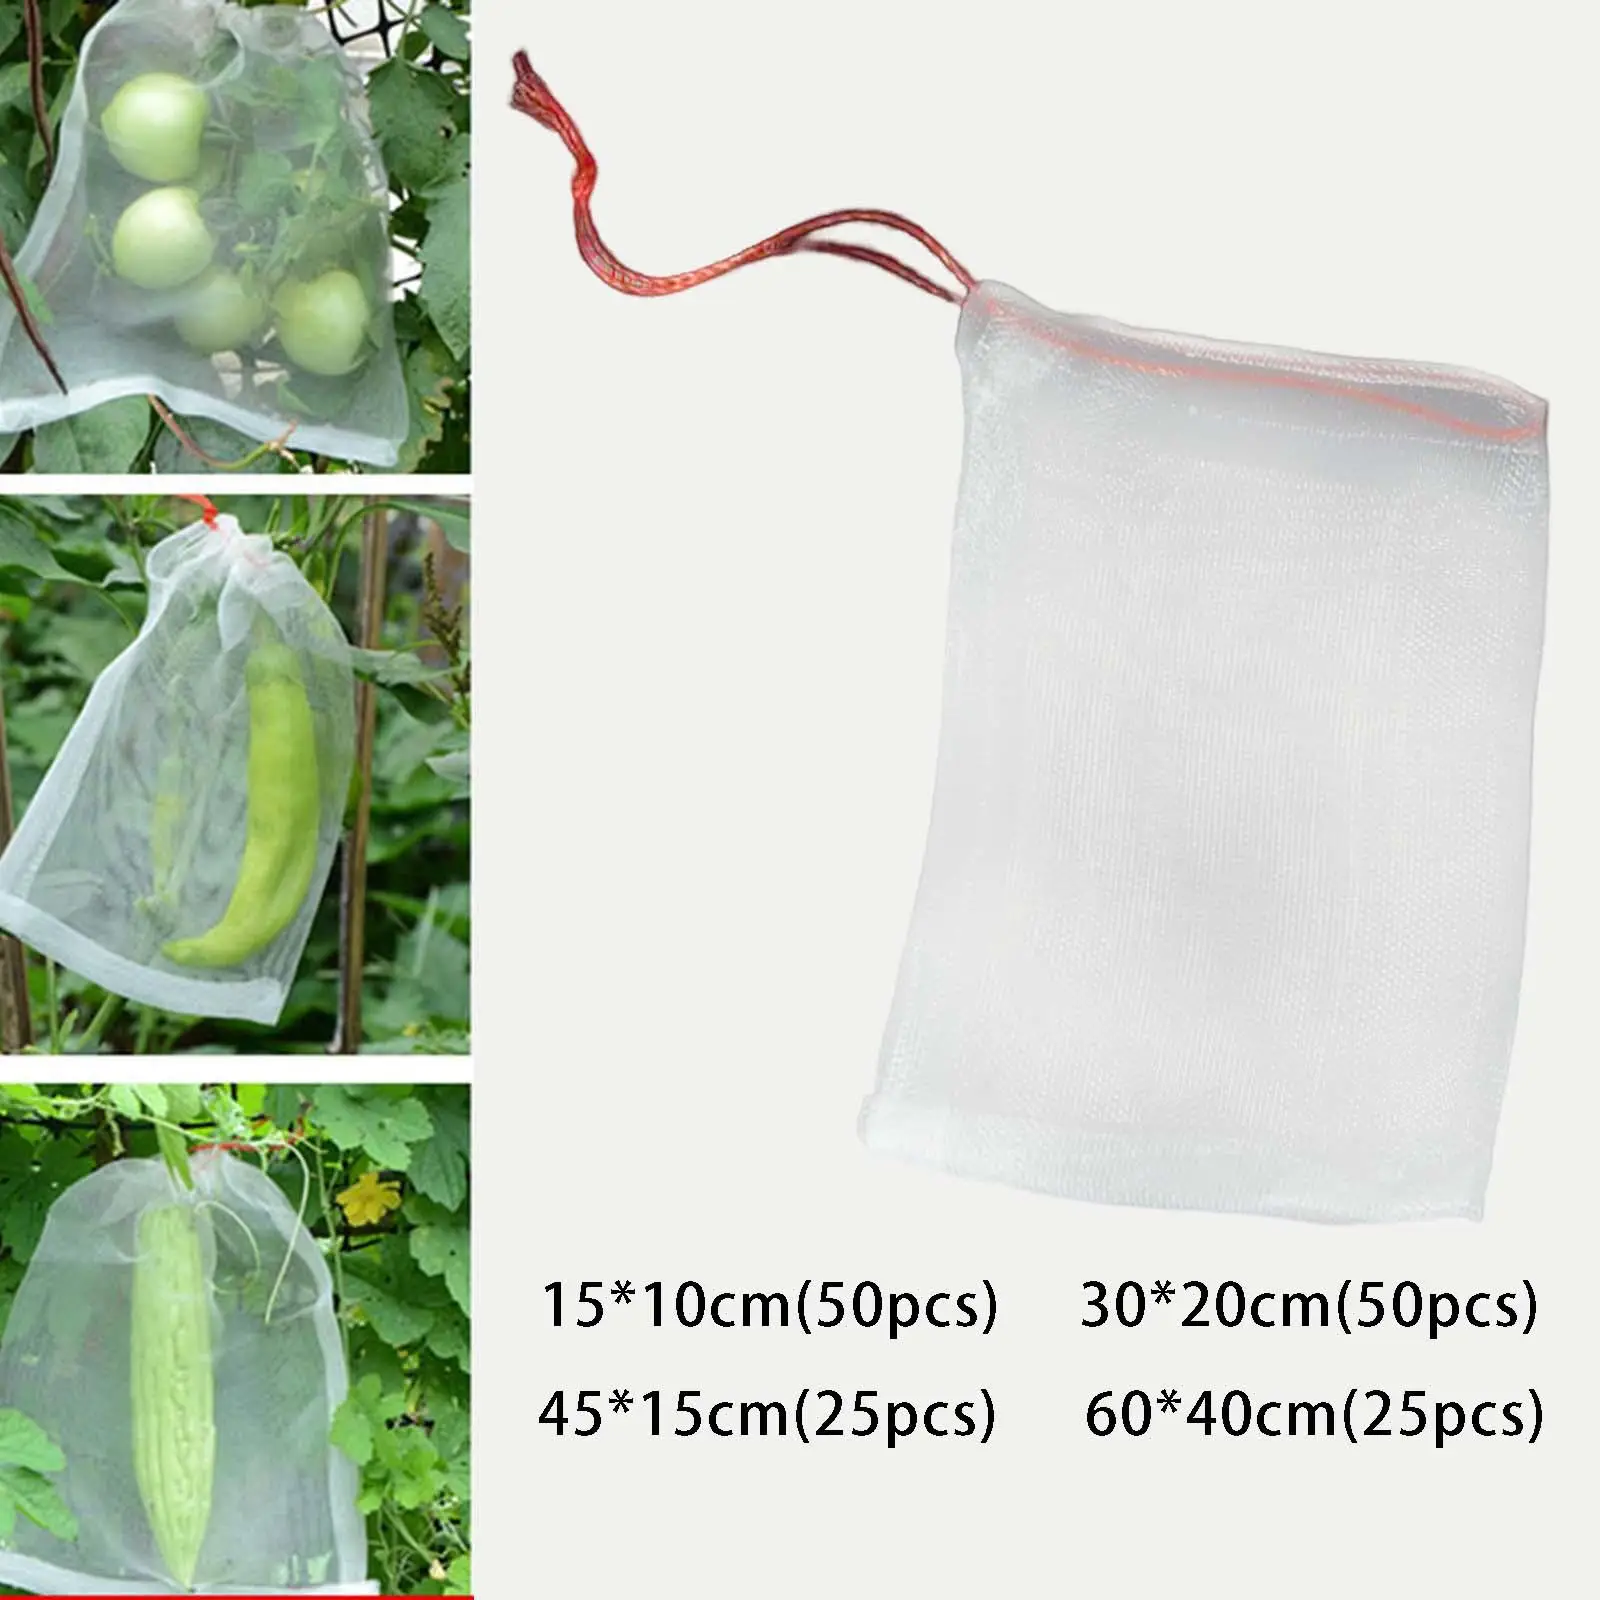 Nylon Fruit Protection Bags Multifunctional Fruit Netting Bags for Flower